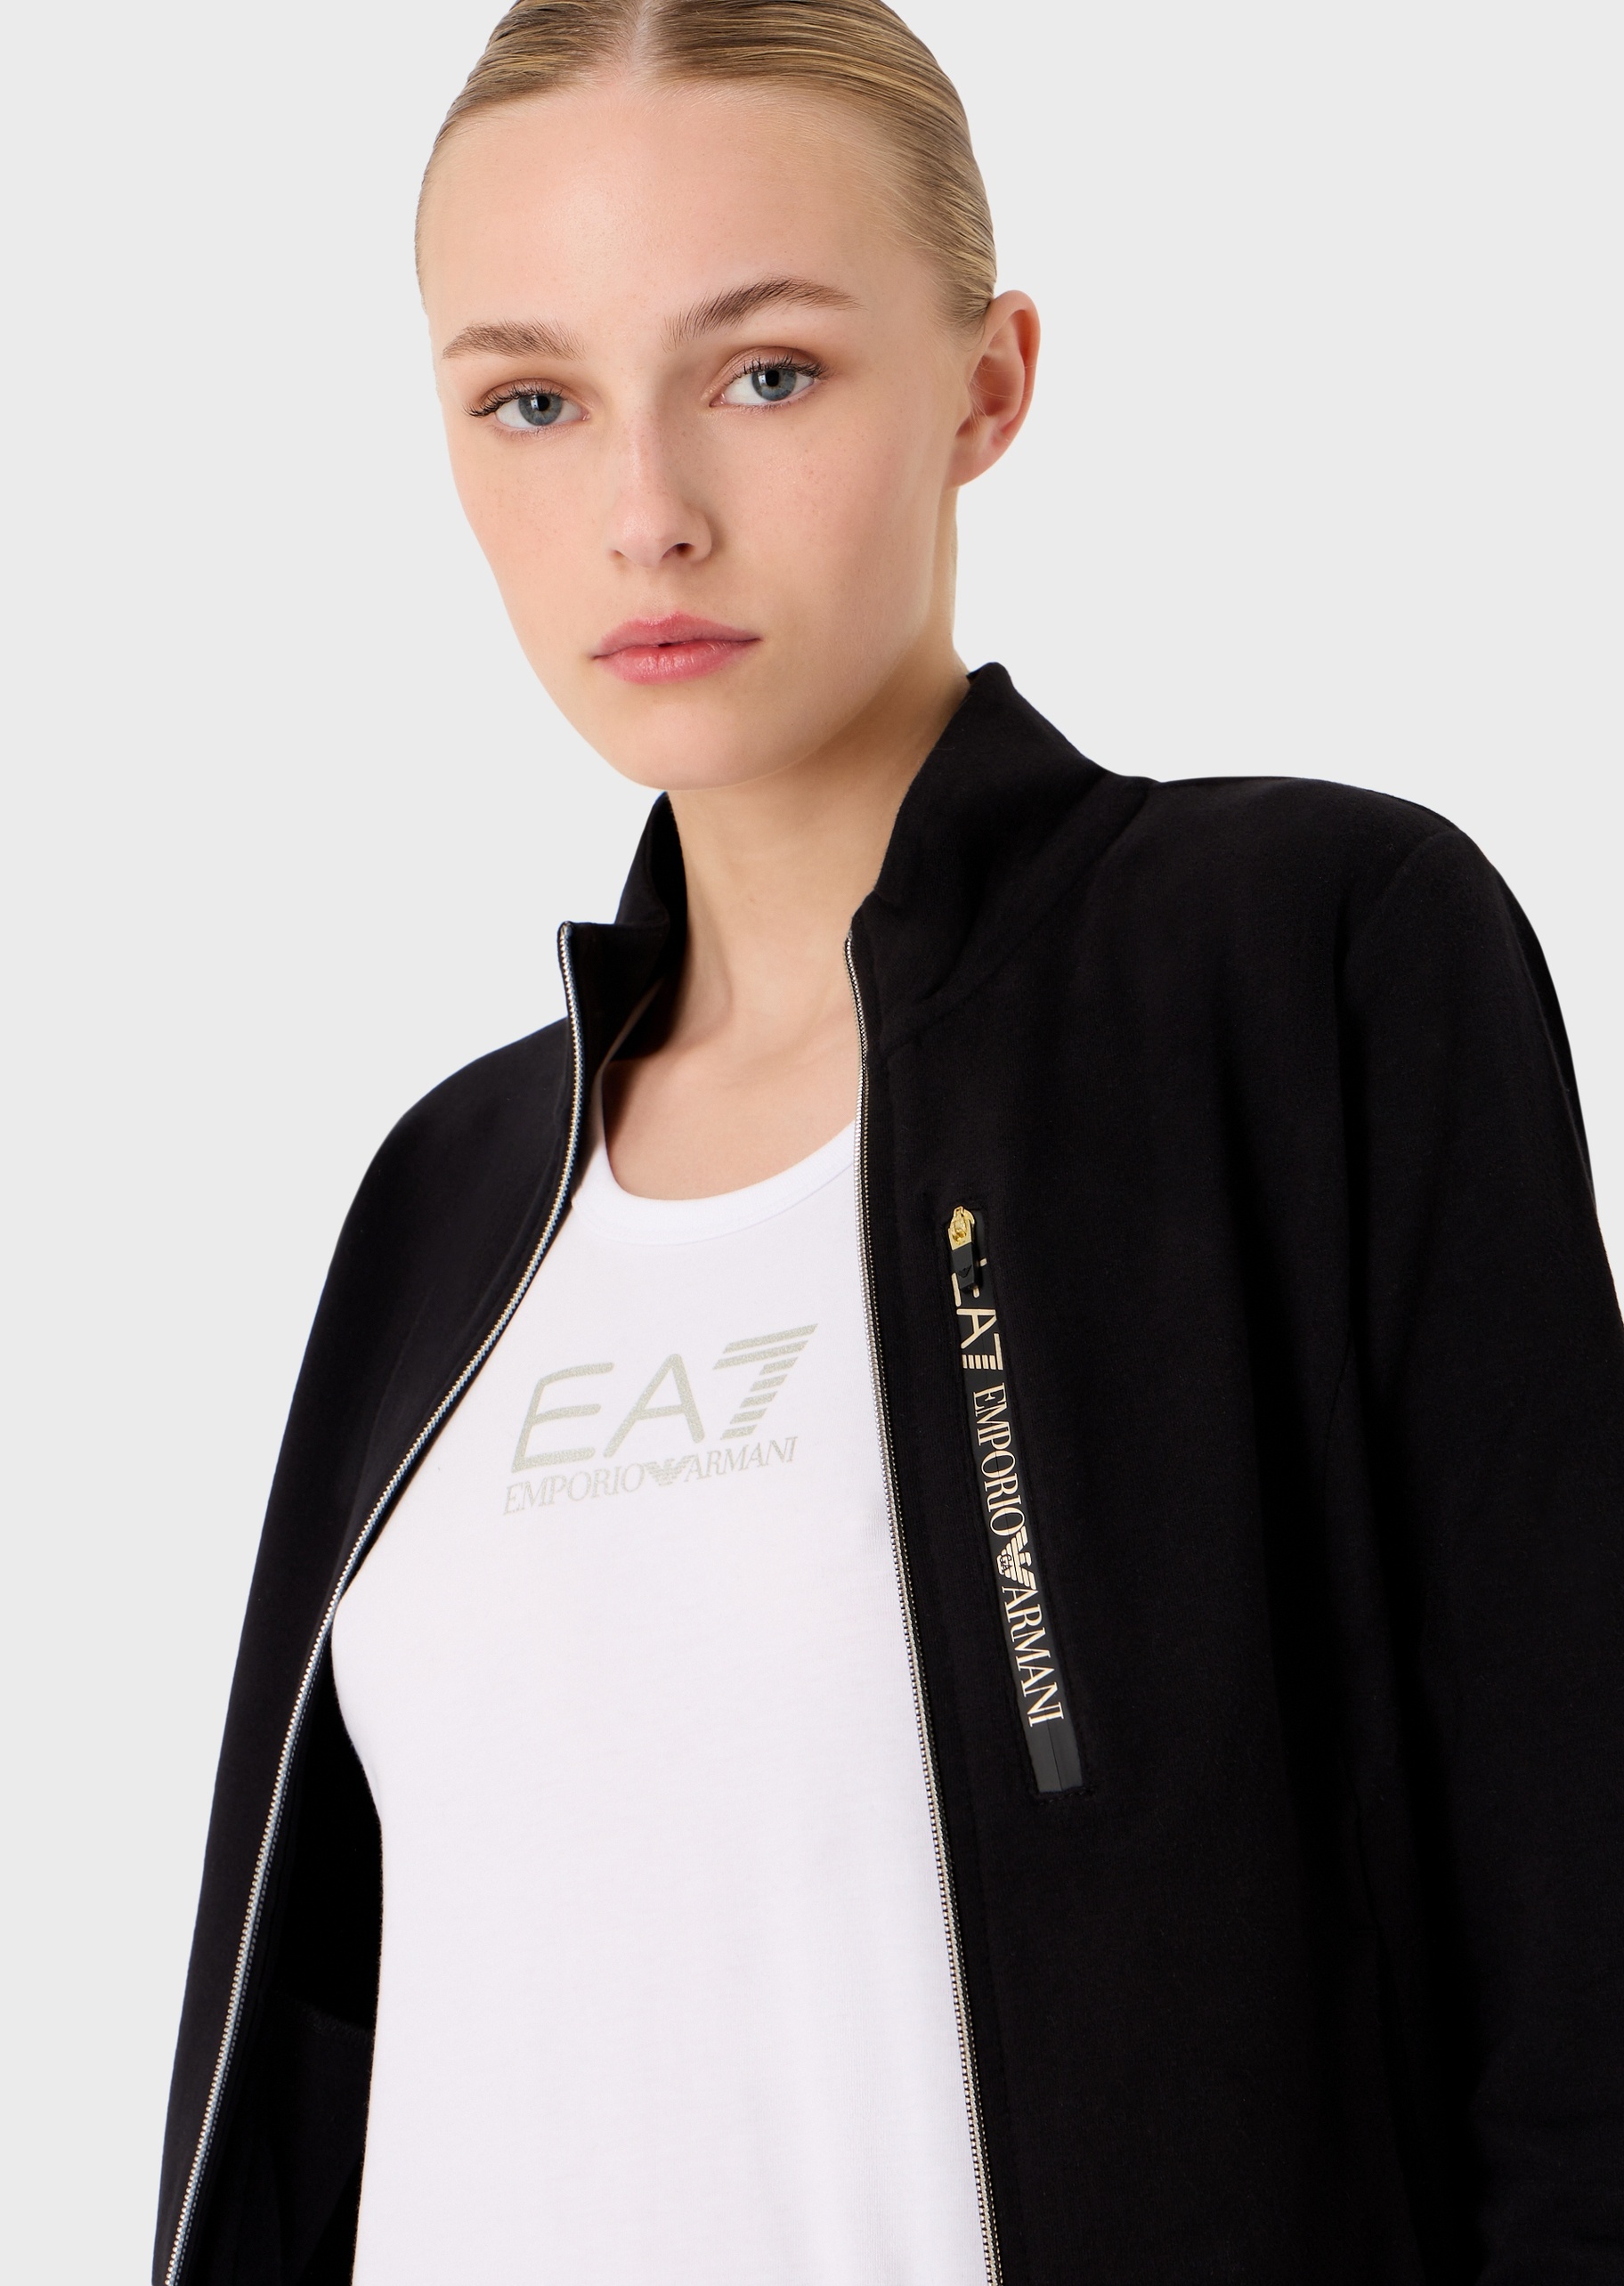 EA7 标识印花立领运动套装